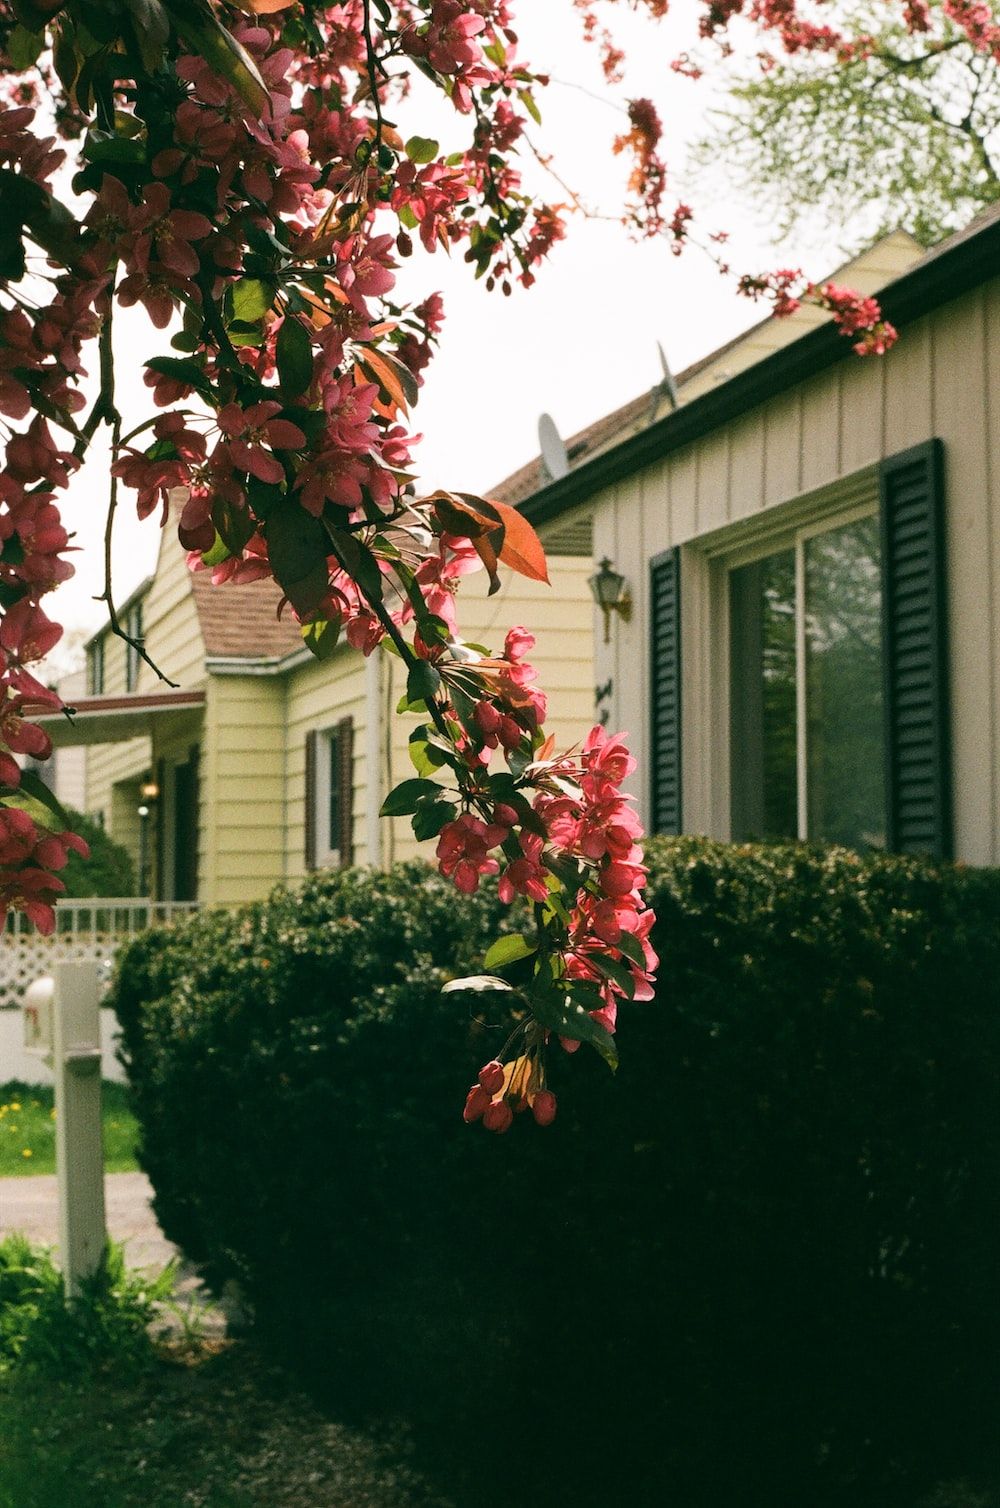  Haus Hintergrundbild 1000x1508. Foto zum Thema Ein Baum mit Blumen vor einem Haus